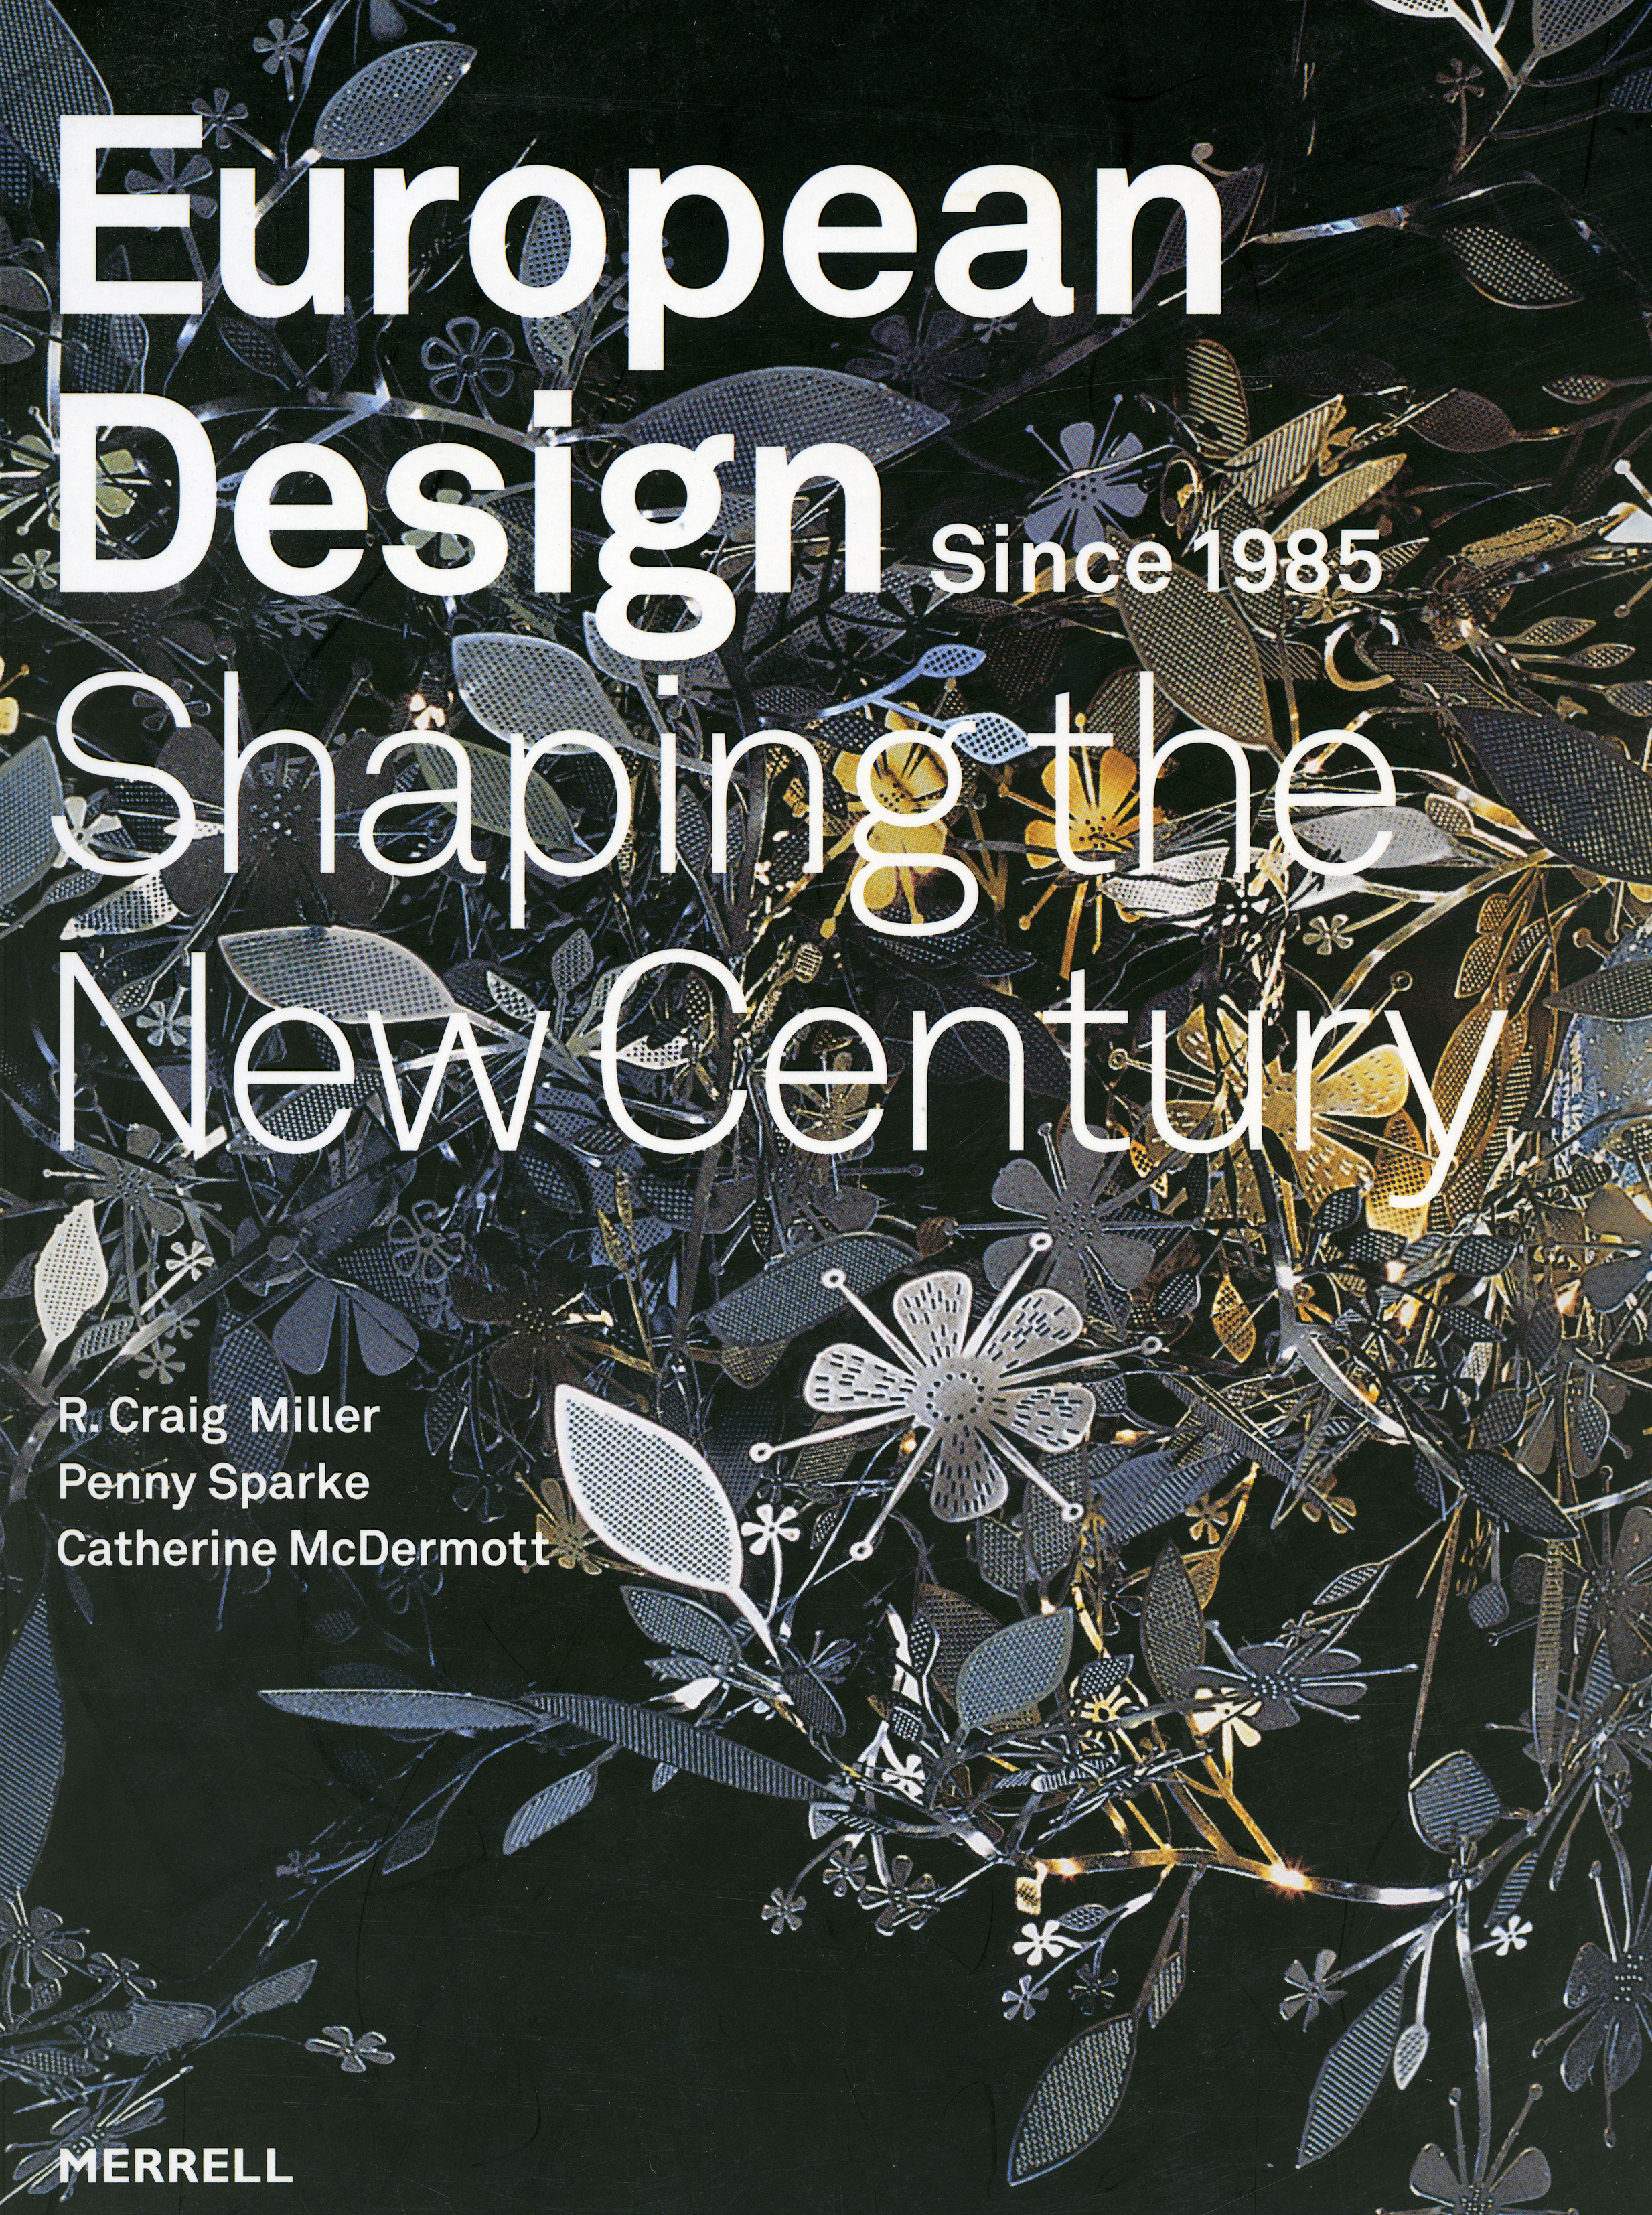 European design 2009 part 1